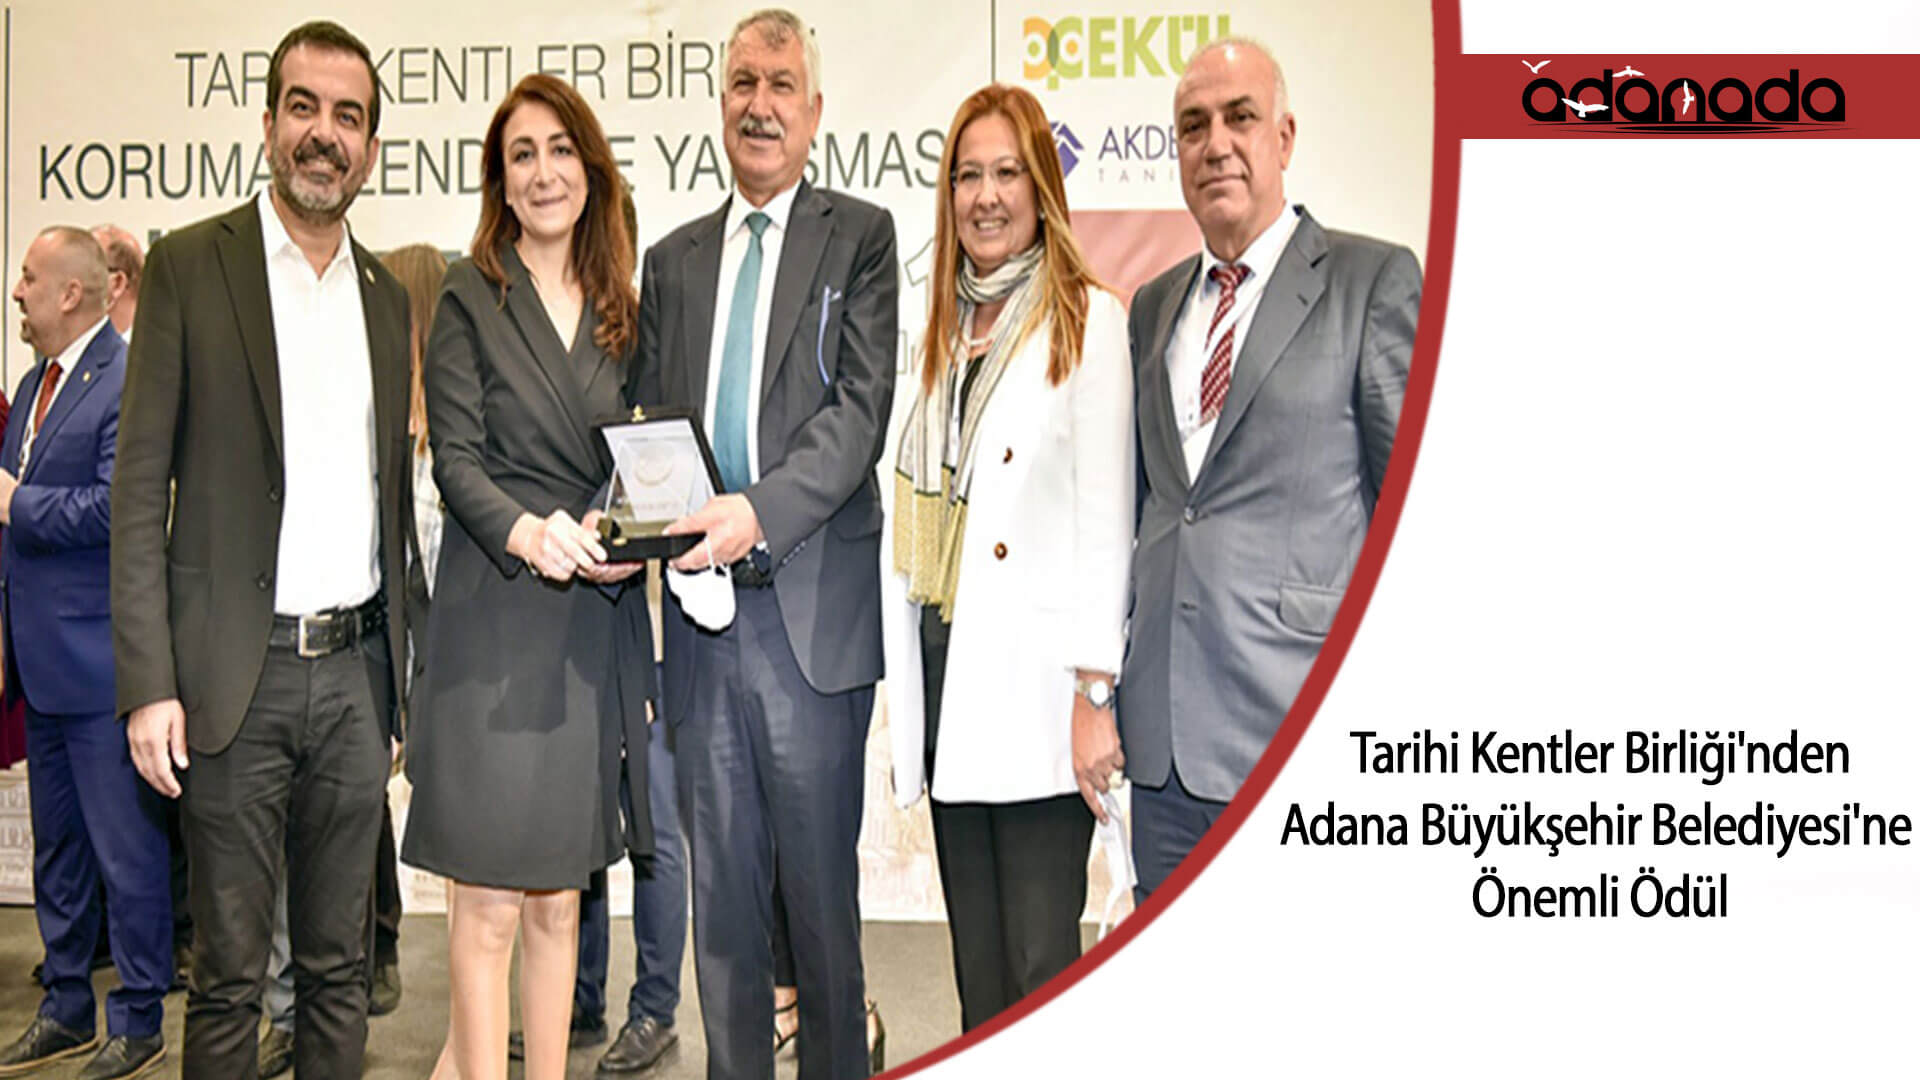 Tarihi Kentler Birliği’nden, Adana Büyükşehir Belediyesi’ne Önemli Ödül